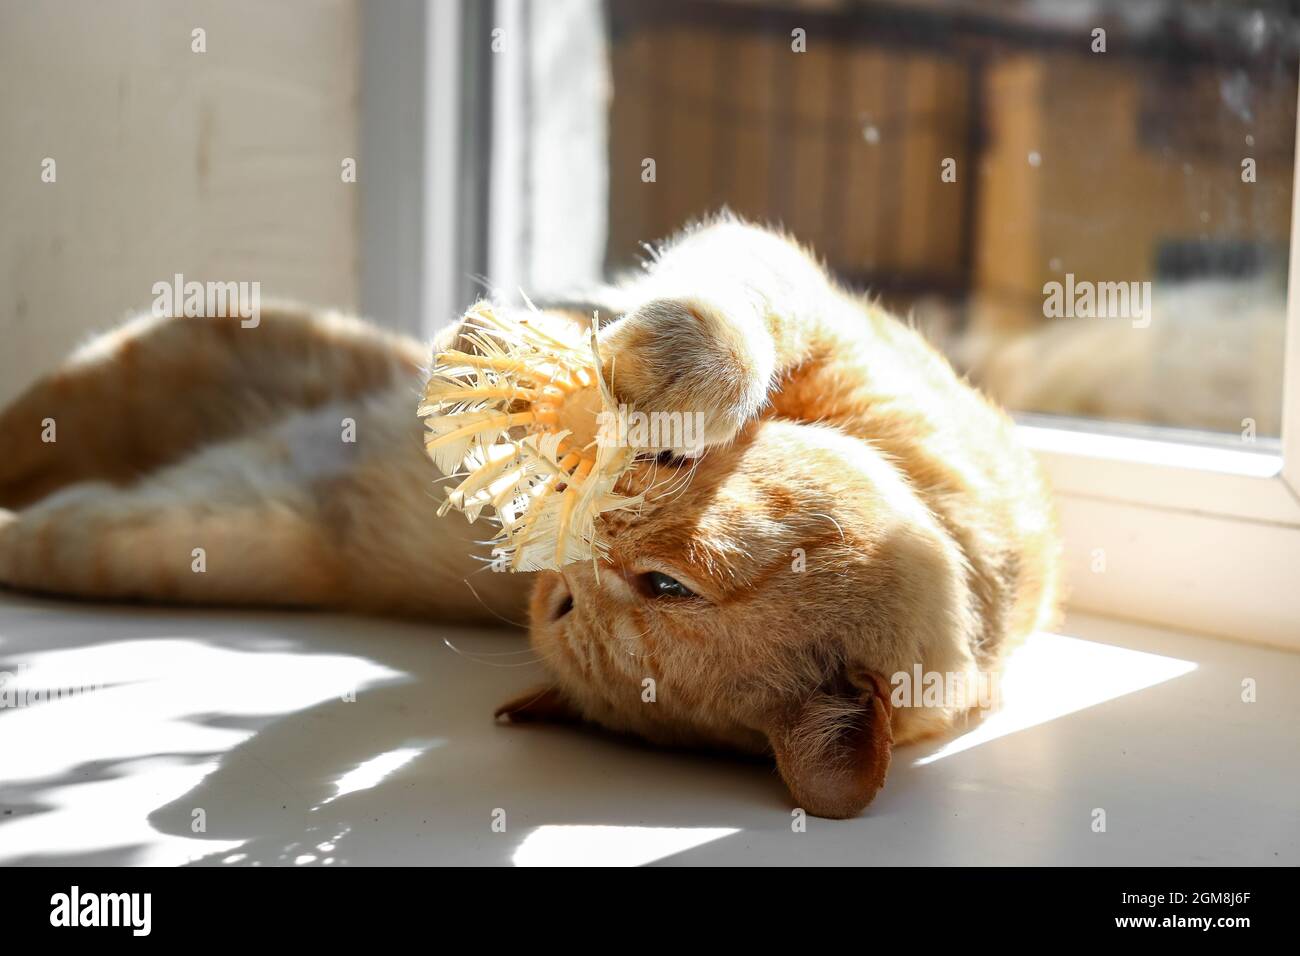 Un chat domestique au gingembre repose sur le rebord de la fenêtre.Le chat au gingembre joue avec un shuttlecock. Banque D'Images